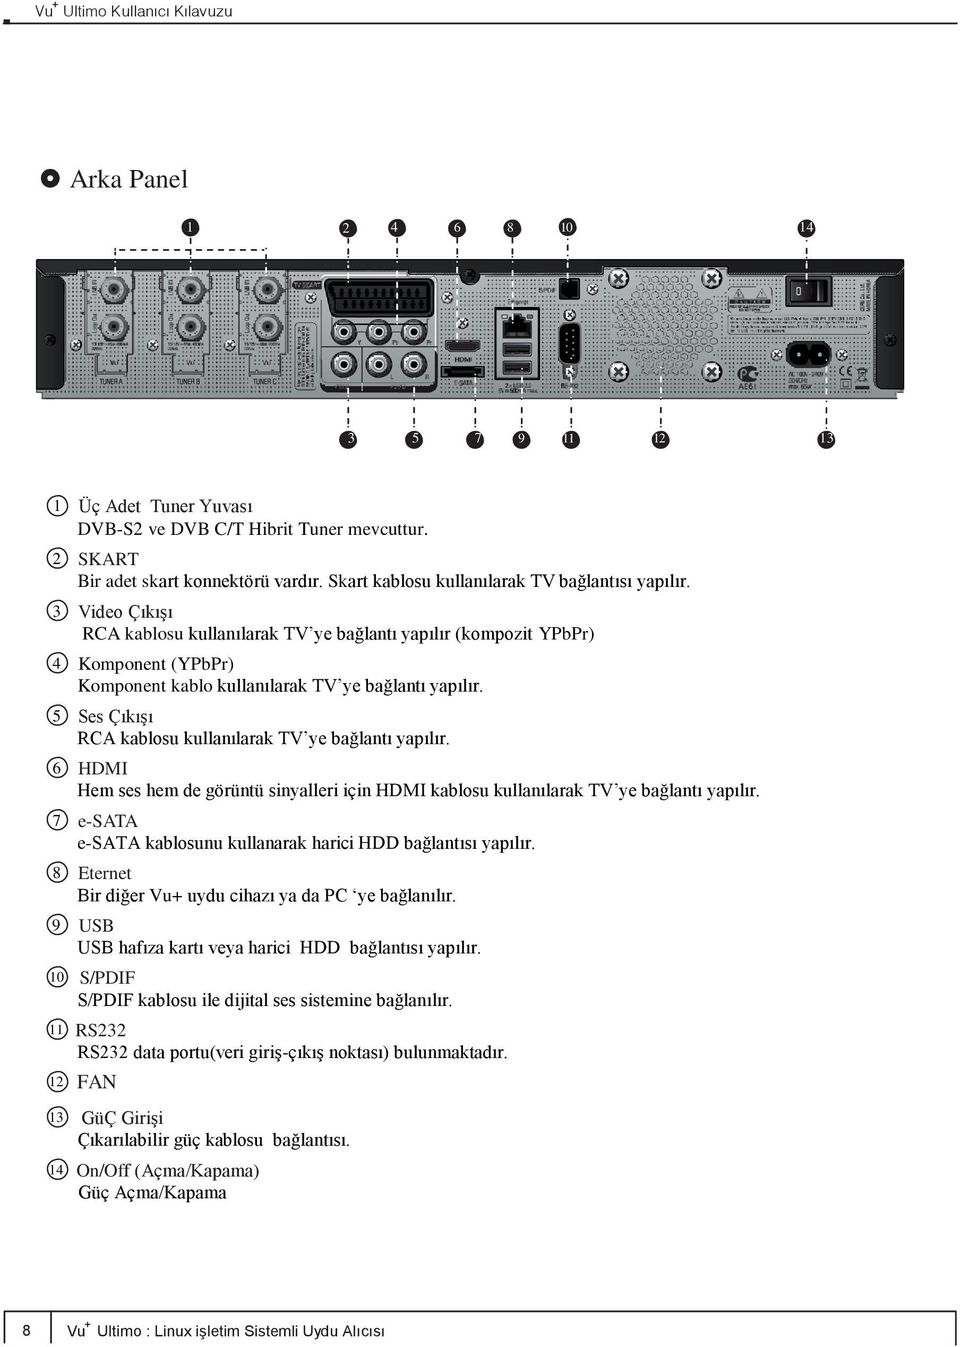 5 Ses Çıkışı RCA kablosu kullanılarak TV ye bağlantı yapılır. 6 HDMI Hem ses hem de görüntü sinyalleri için HDMI kablosu kullanılarak TV ye bağlantı yapılır.